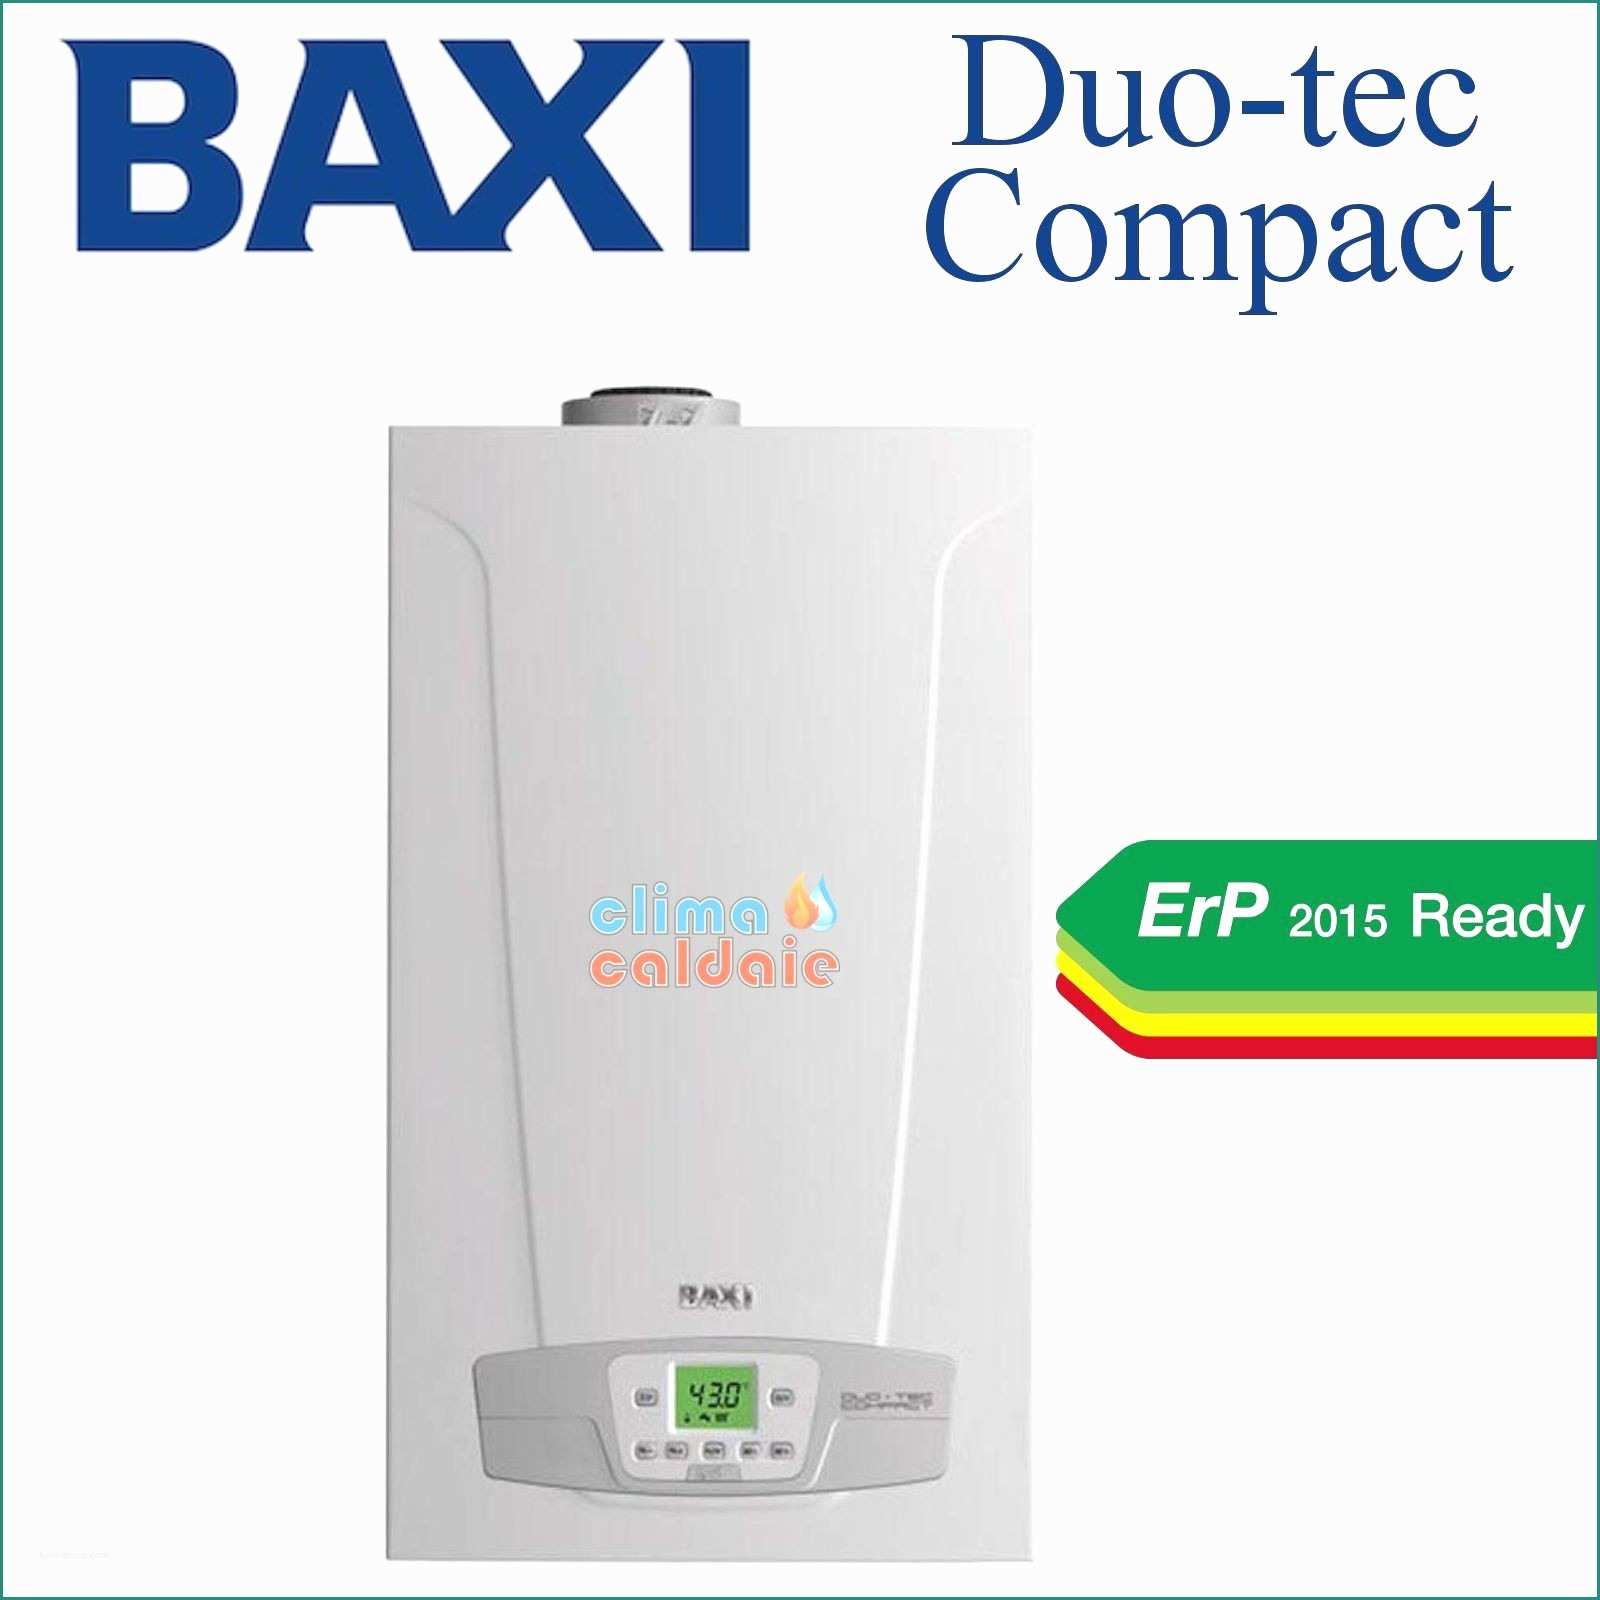 Baxi Eco Compact E Caldaia A Condensazione 24 Kw Baxi Duo Tec Pact Ht 28 Ga Kit Avec